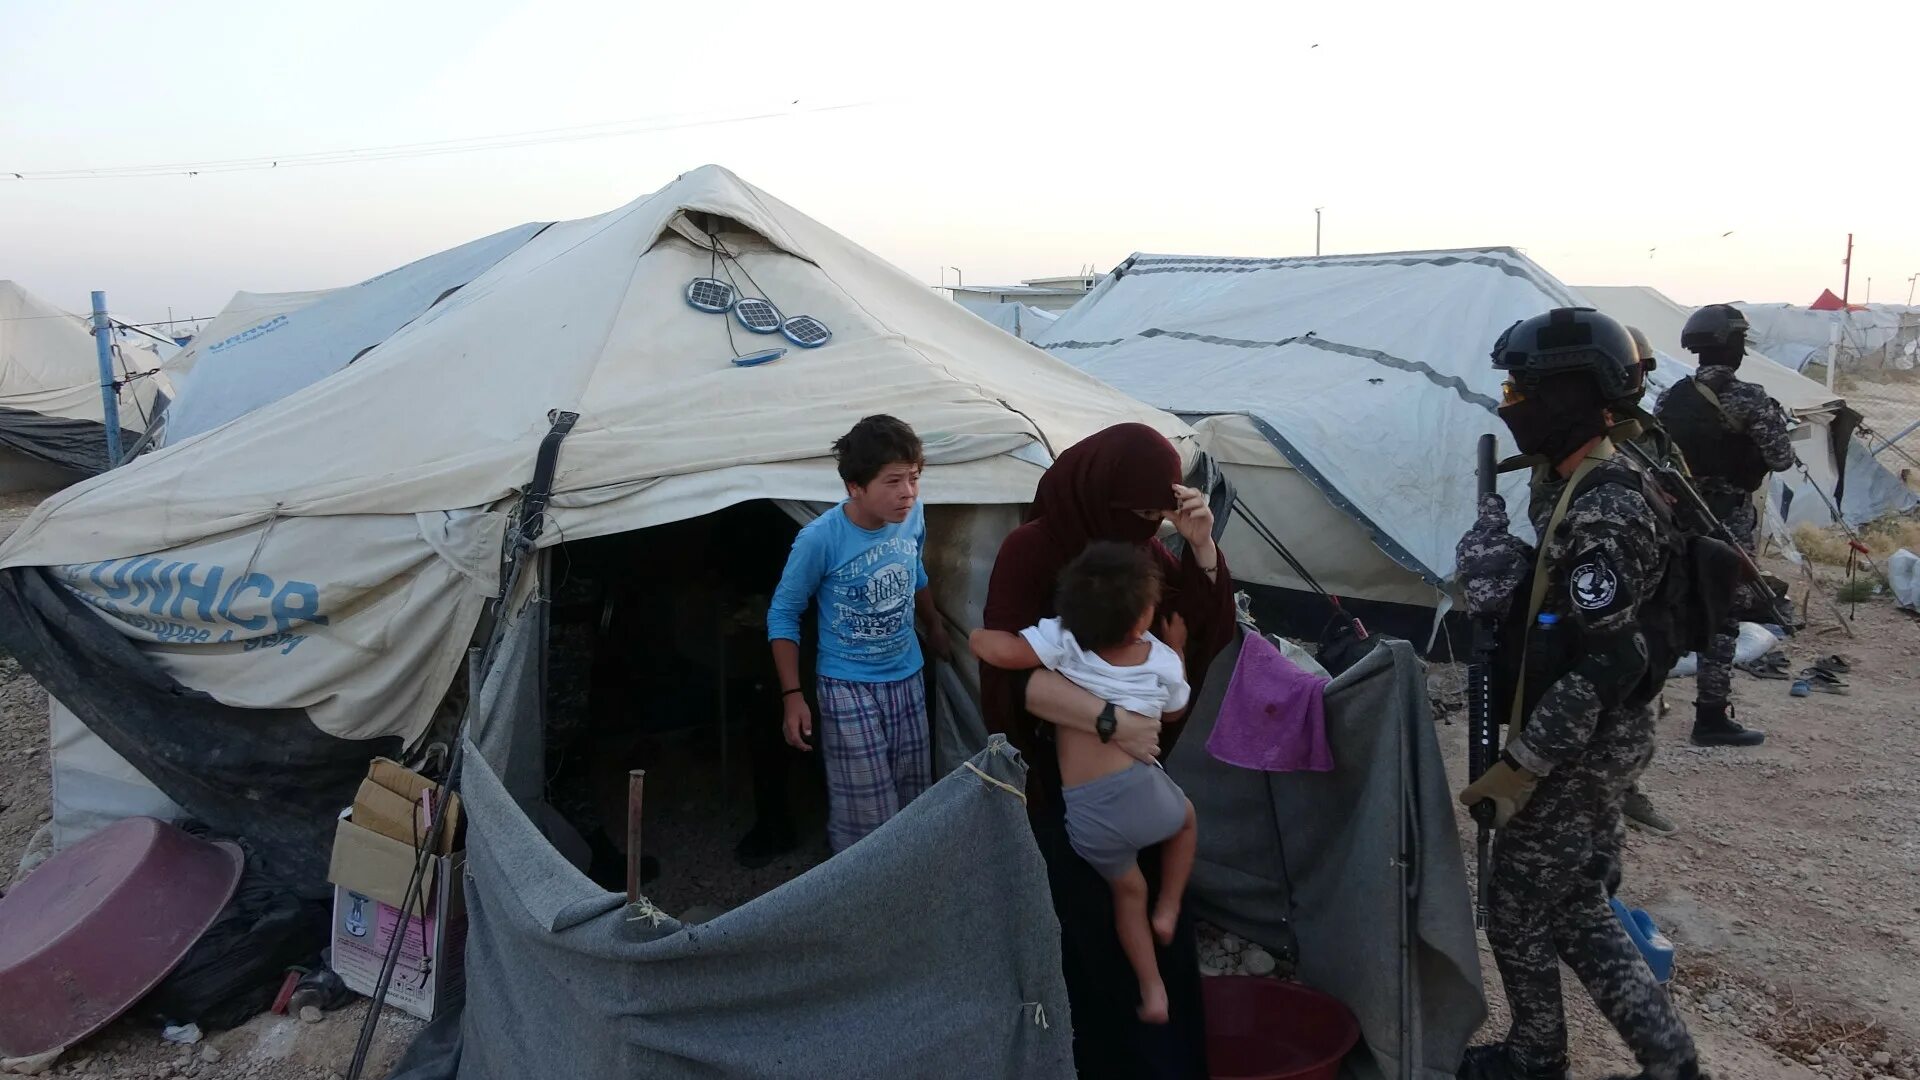 Аль Холь лагерь беженцев. В лагере беженцев «Аль-хол». Лагерь беженцев в Сирии Аль Холь. Новости холе